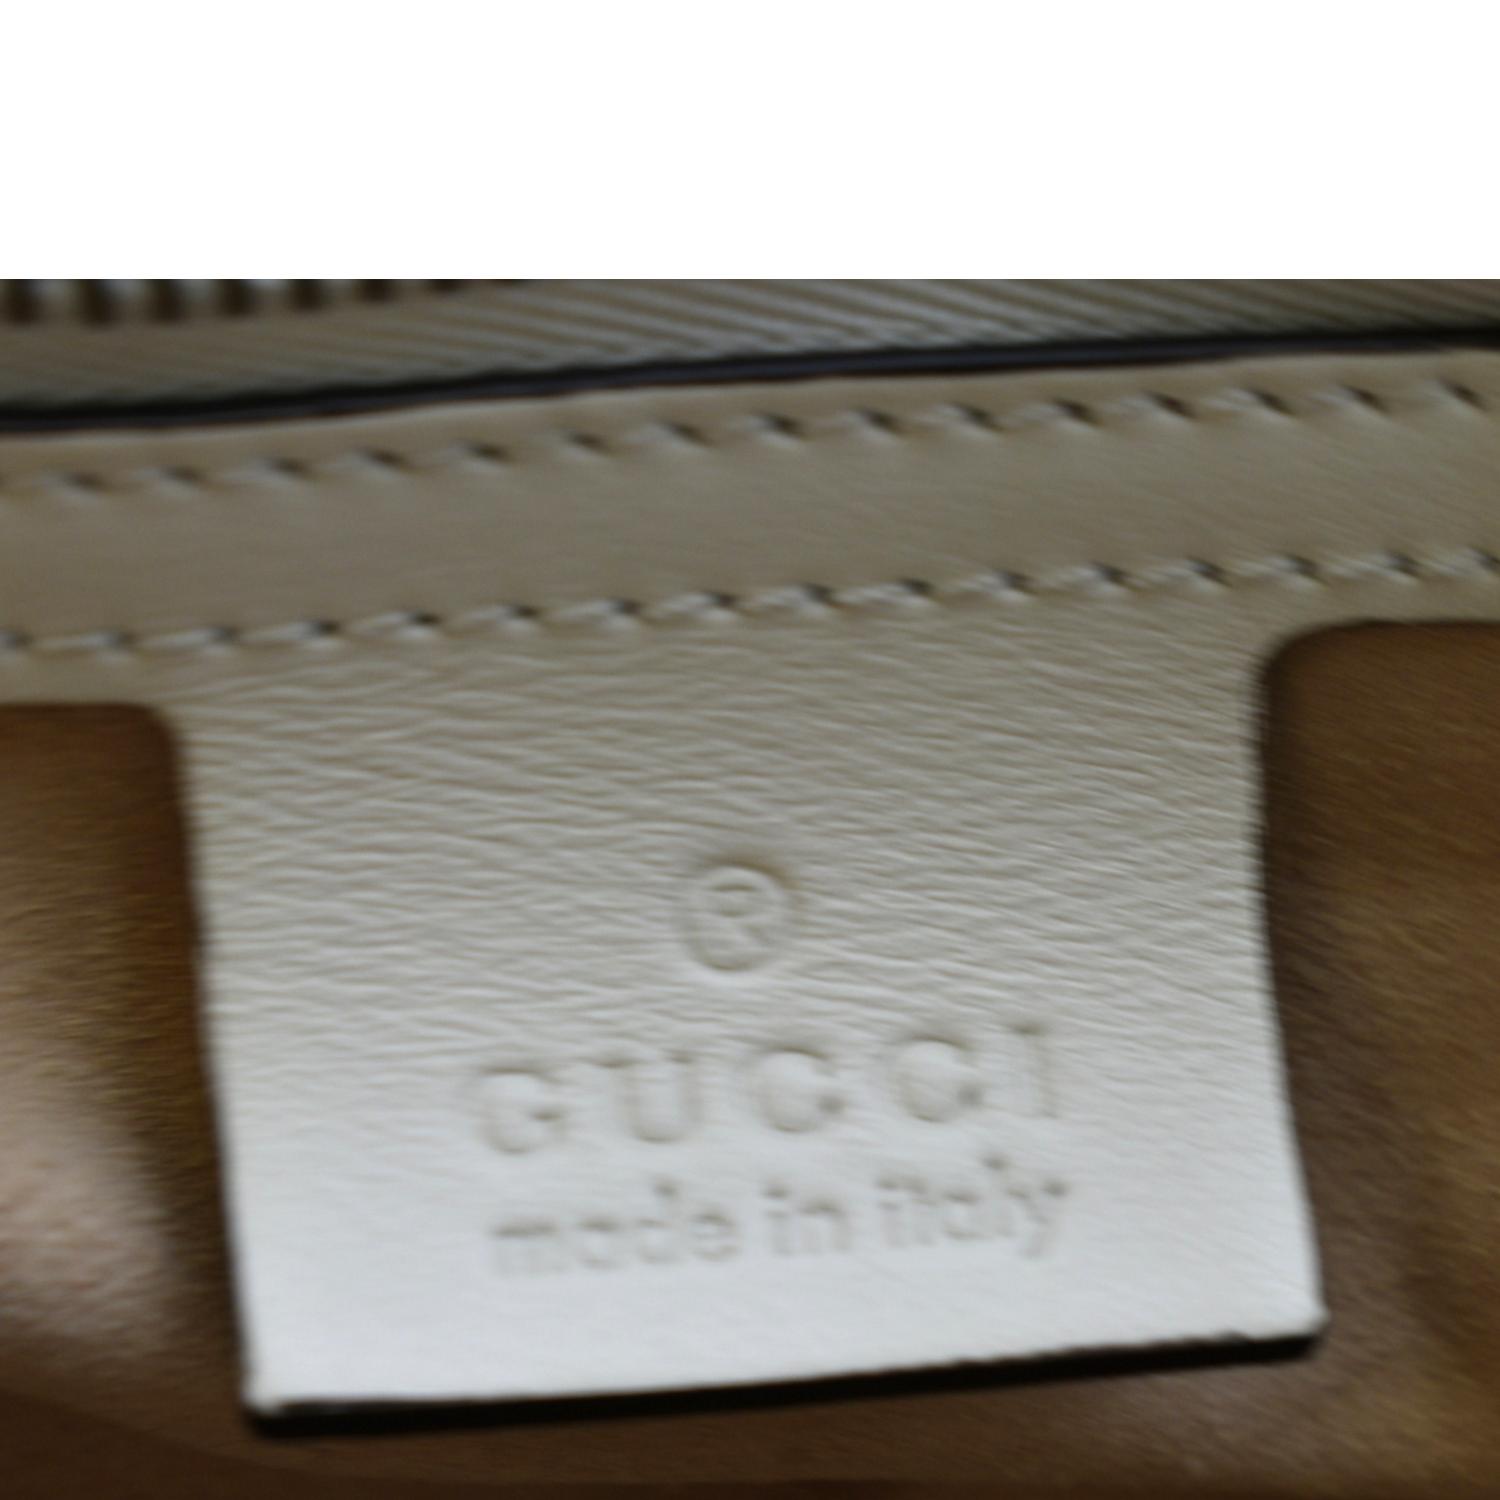 Gucci Black Matelassé Large GG Marmont Shoulder Bag, myGemma